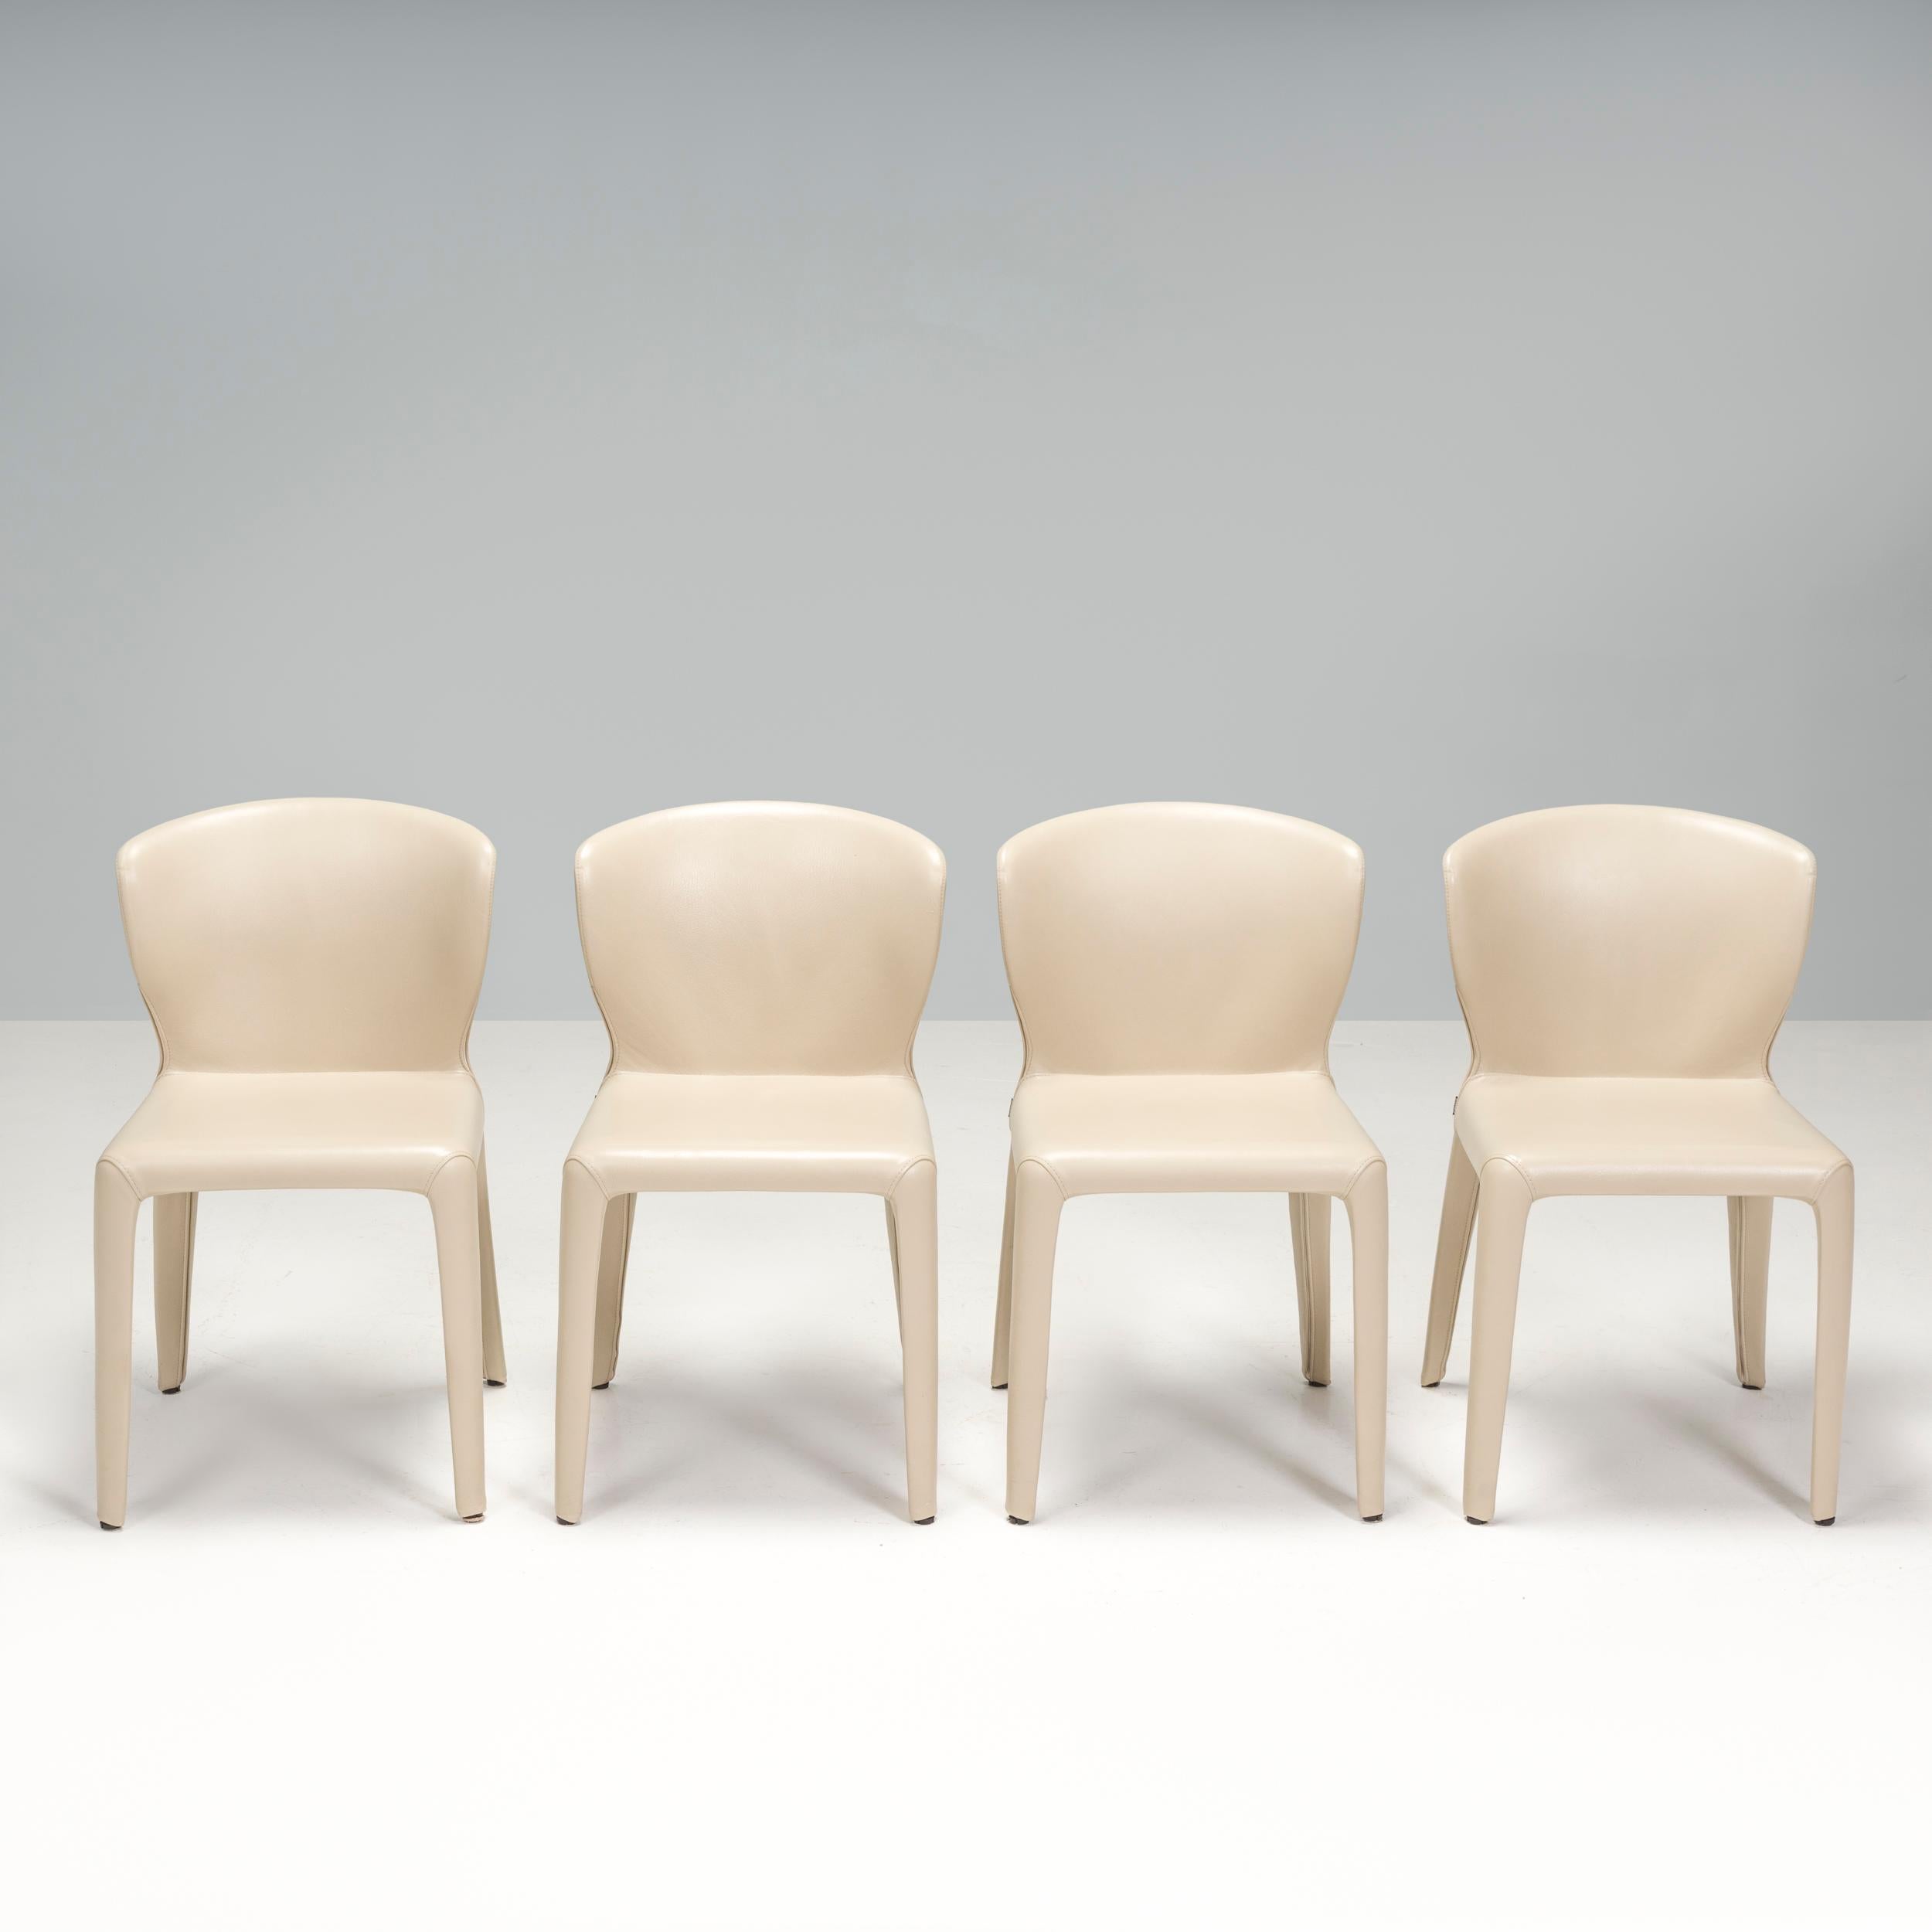 Die 2003 von Hannes Wettstein für Cassina entworfenen 367 Hola Esszimmerstühle haben eine schlanke, moderne Silhouette.
 
Die vier Stühle sind in ausgezeichnetem Zustand und vollständig mit cremefarbenem Leder gepolstert.
 
Die Stühle mit